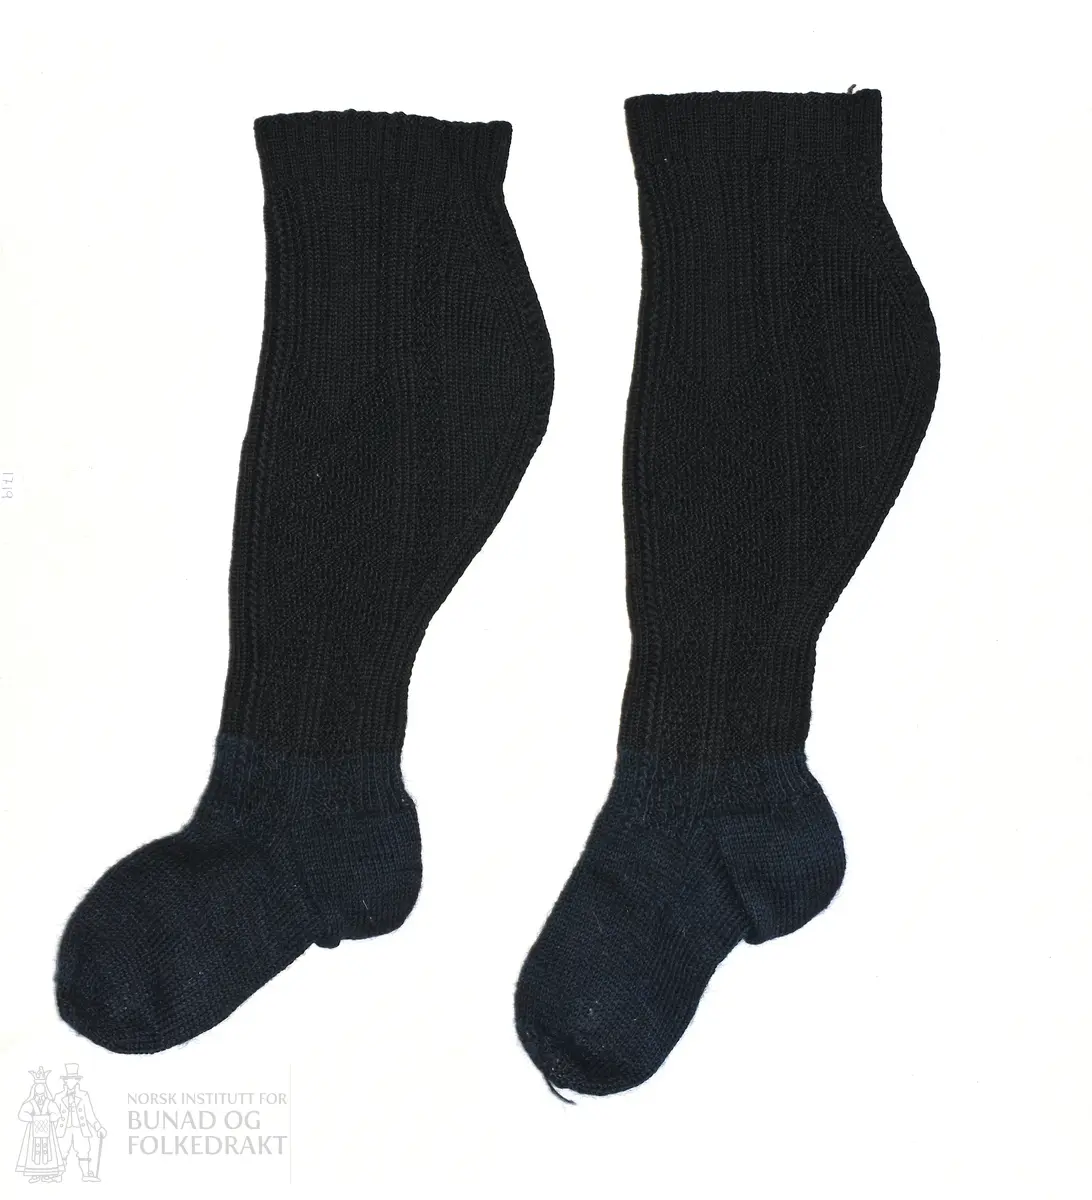 Krota sokkar til kvinne. Strikka strømper, i mønster med rett og vrang. Svart tretråders ullgarn.